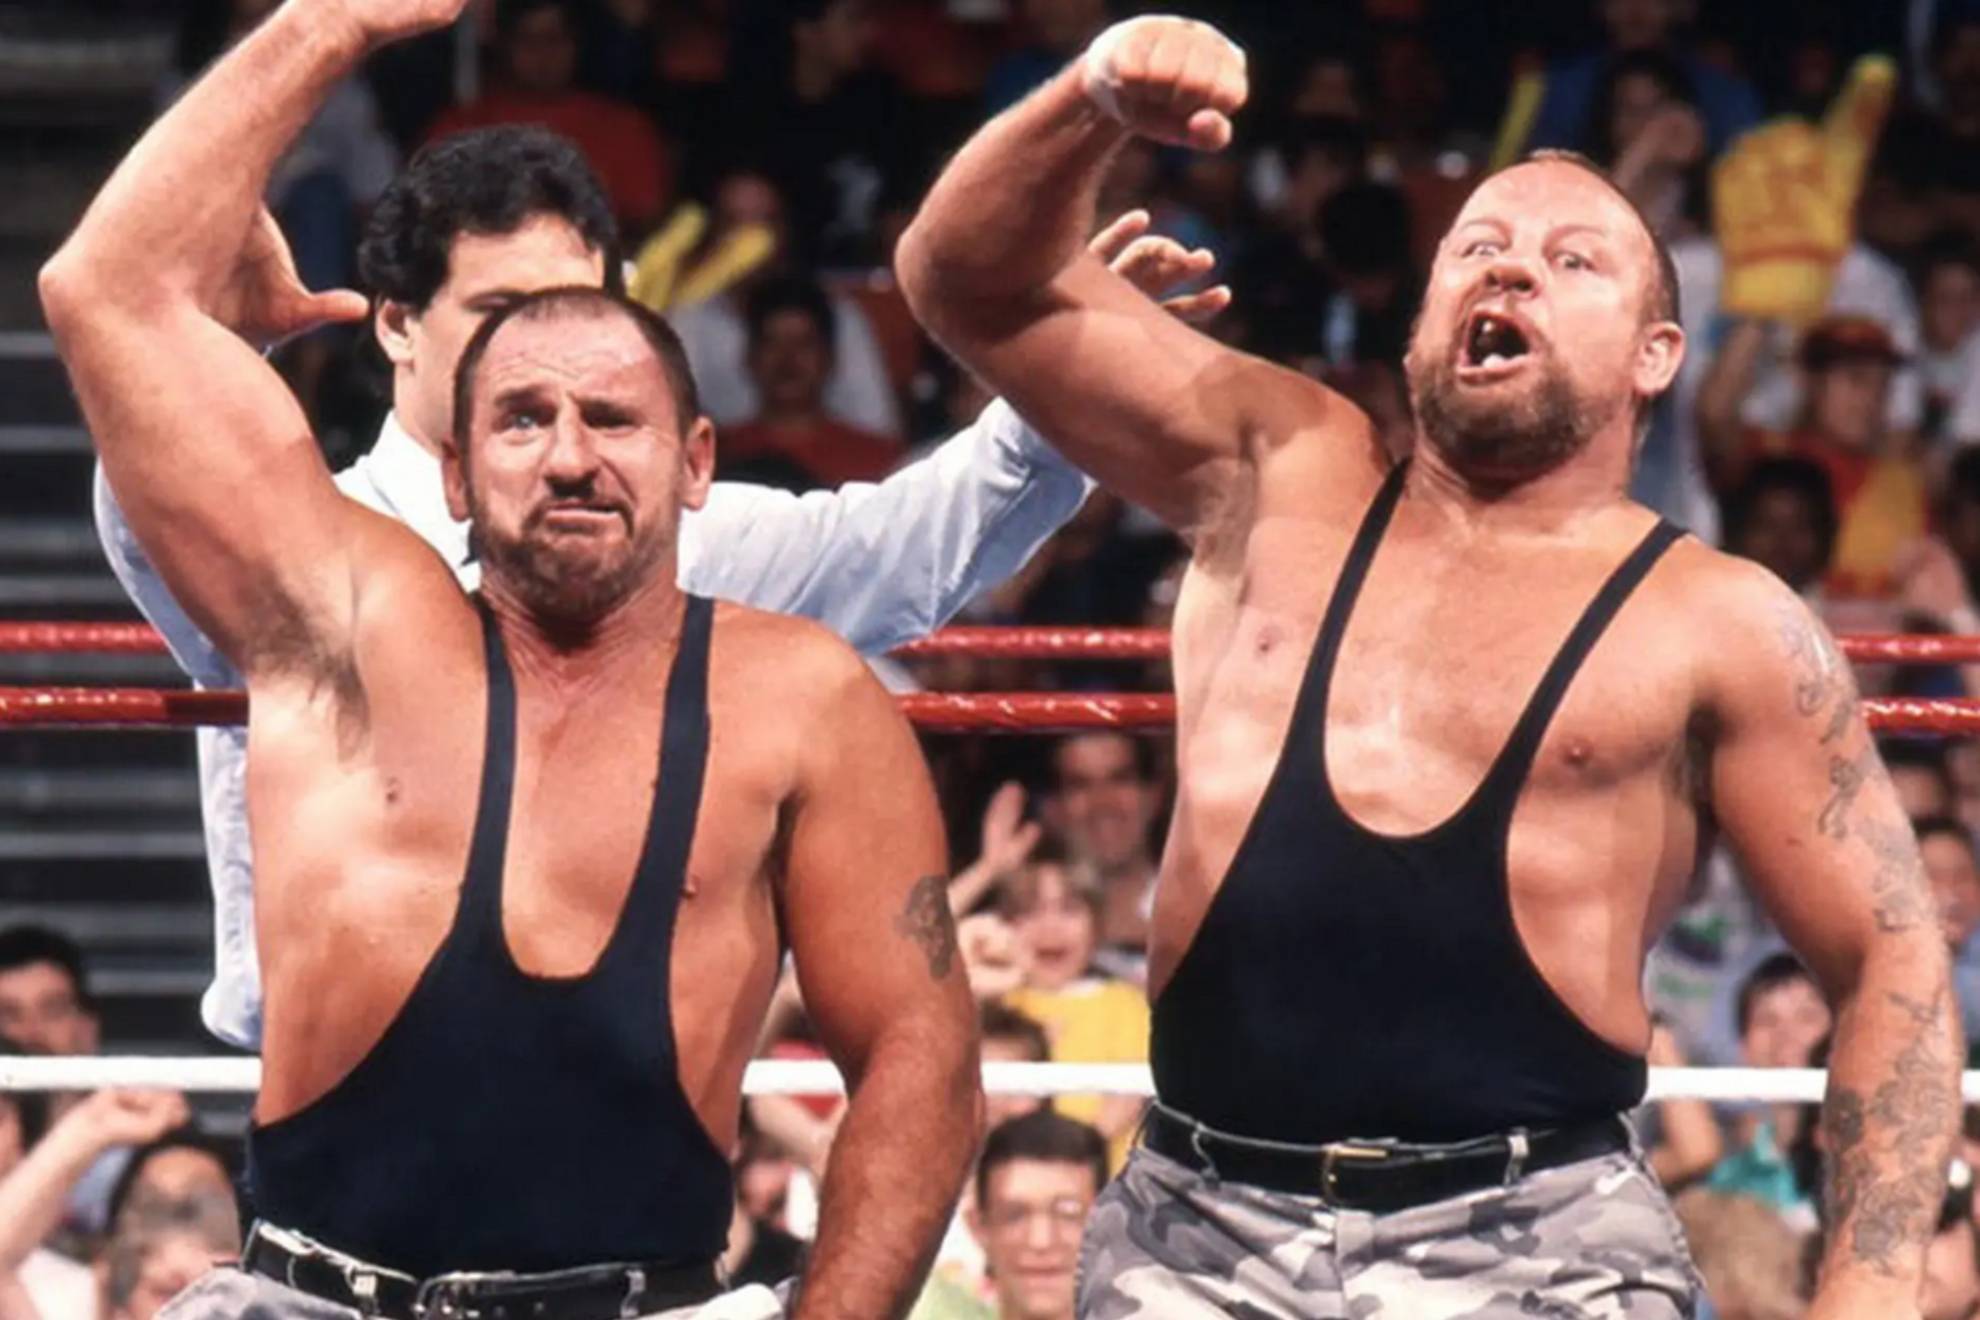 Muere Bushwhacker Butch, la mitad de los mticos 'Sacamantecas' de la WWE: "Era un paleto de primera"